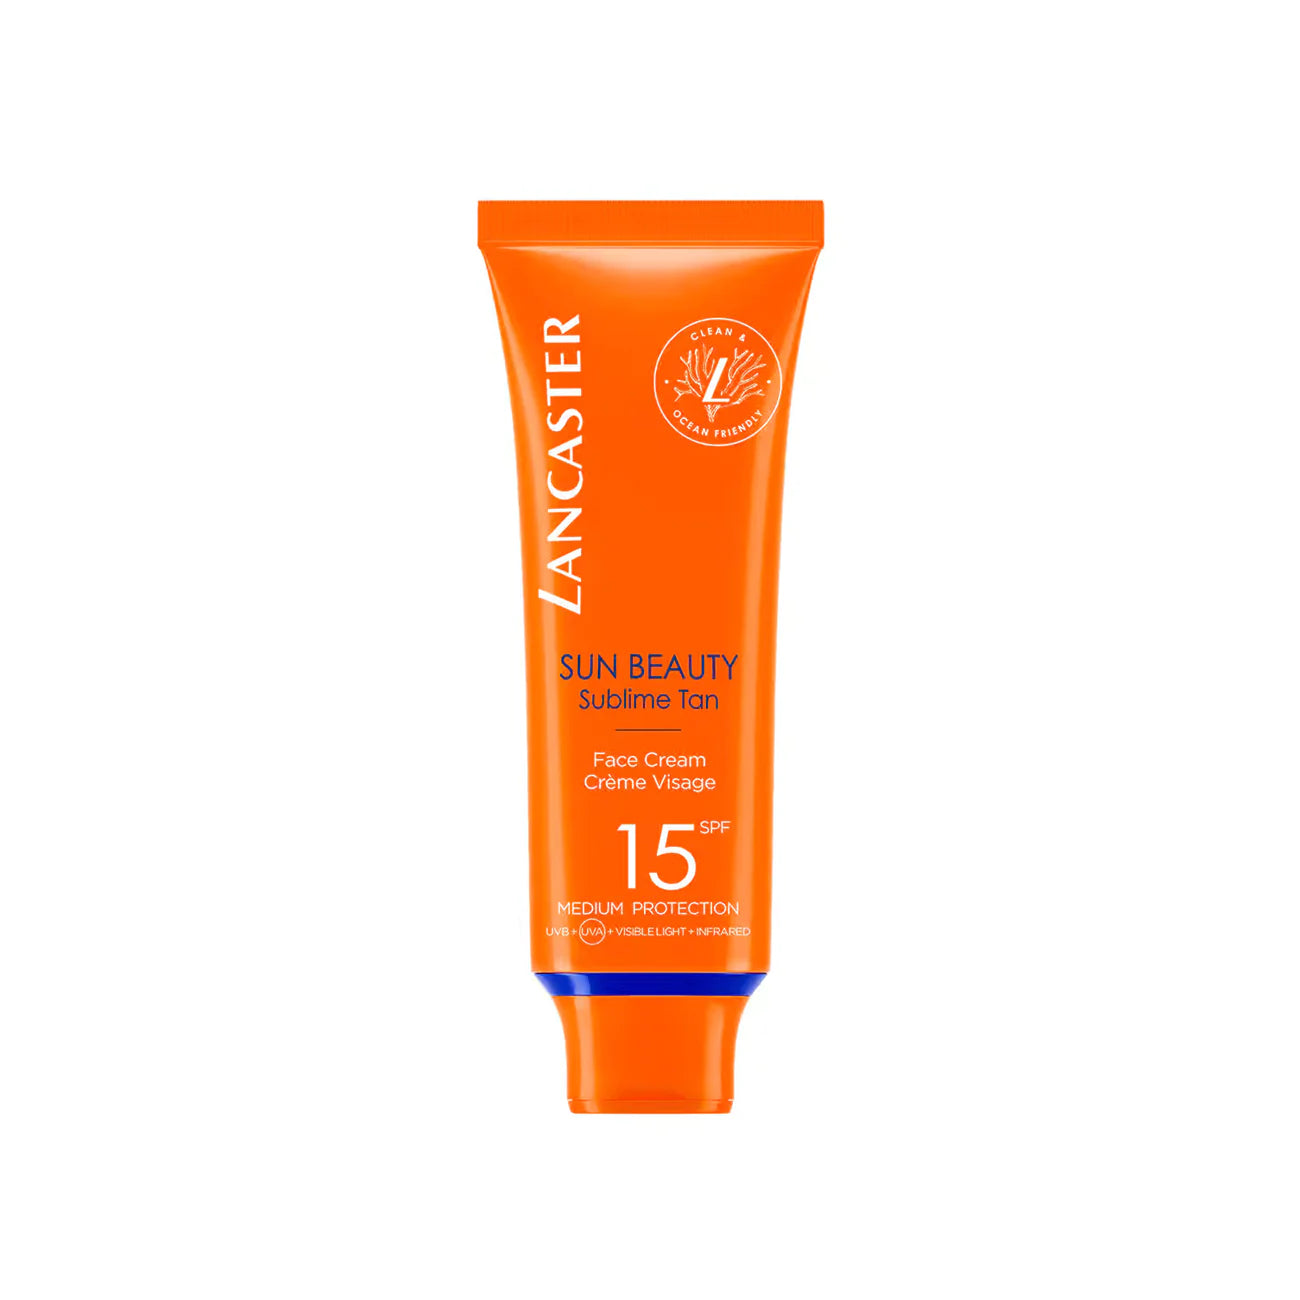 Sun Beauty Sublime Tan Face Cream SPF15 - MazenOnline